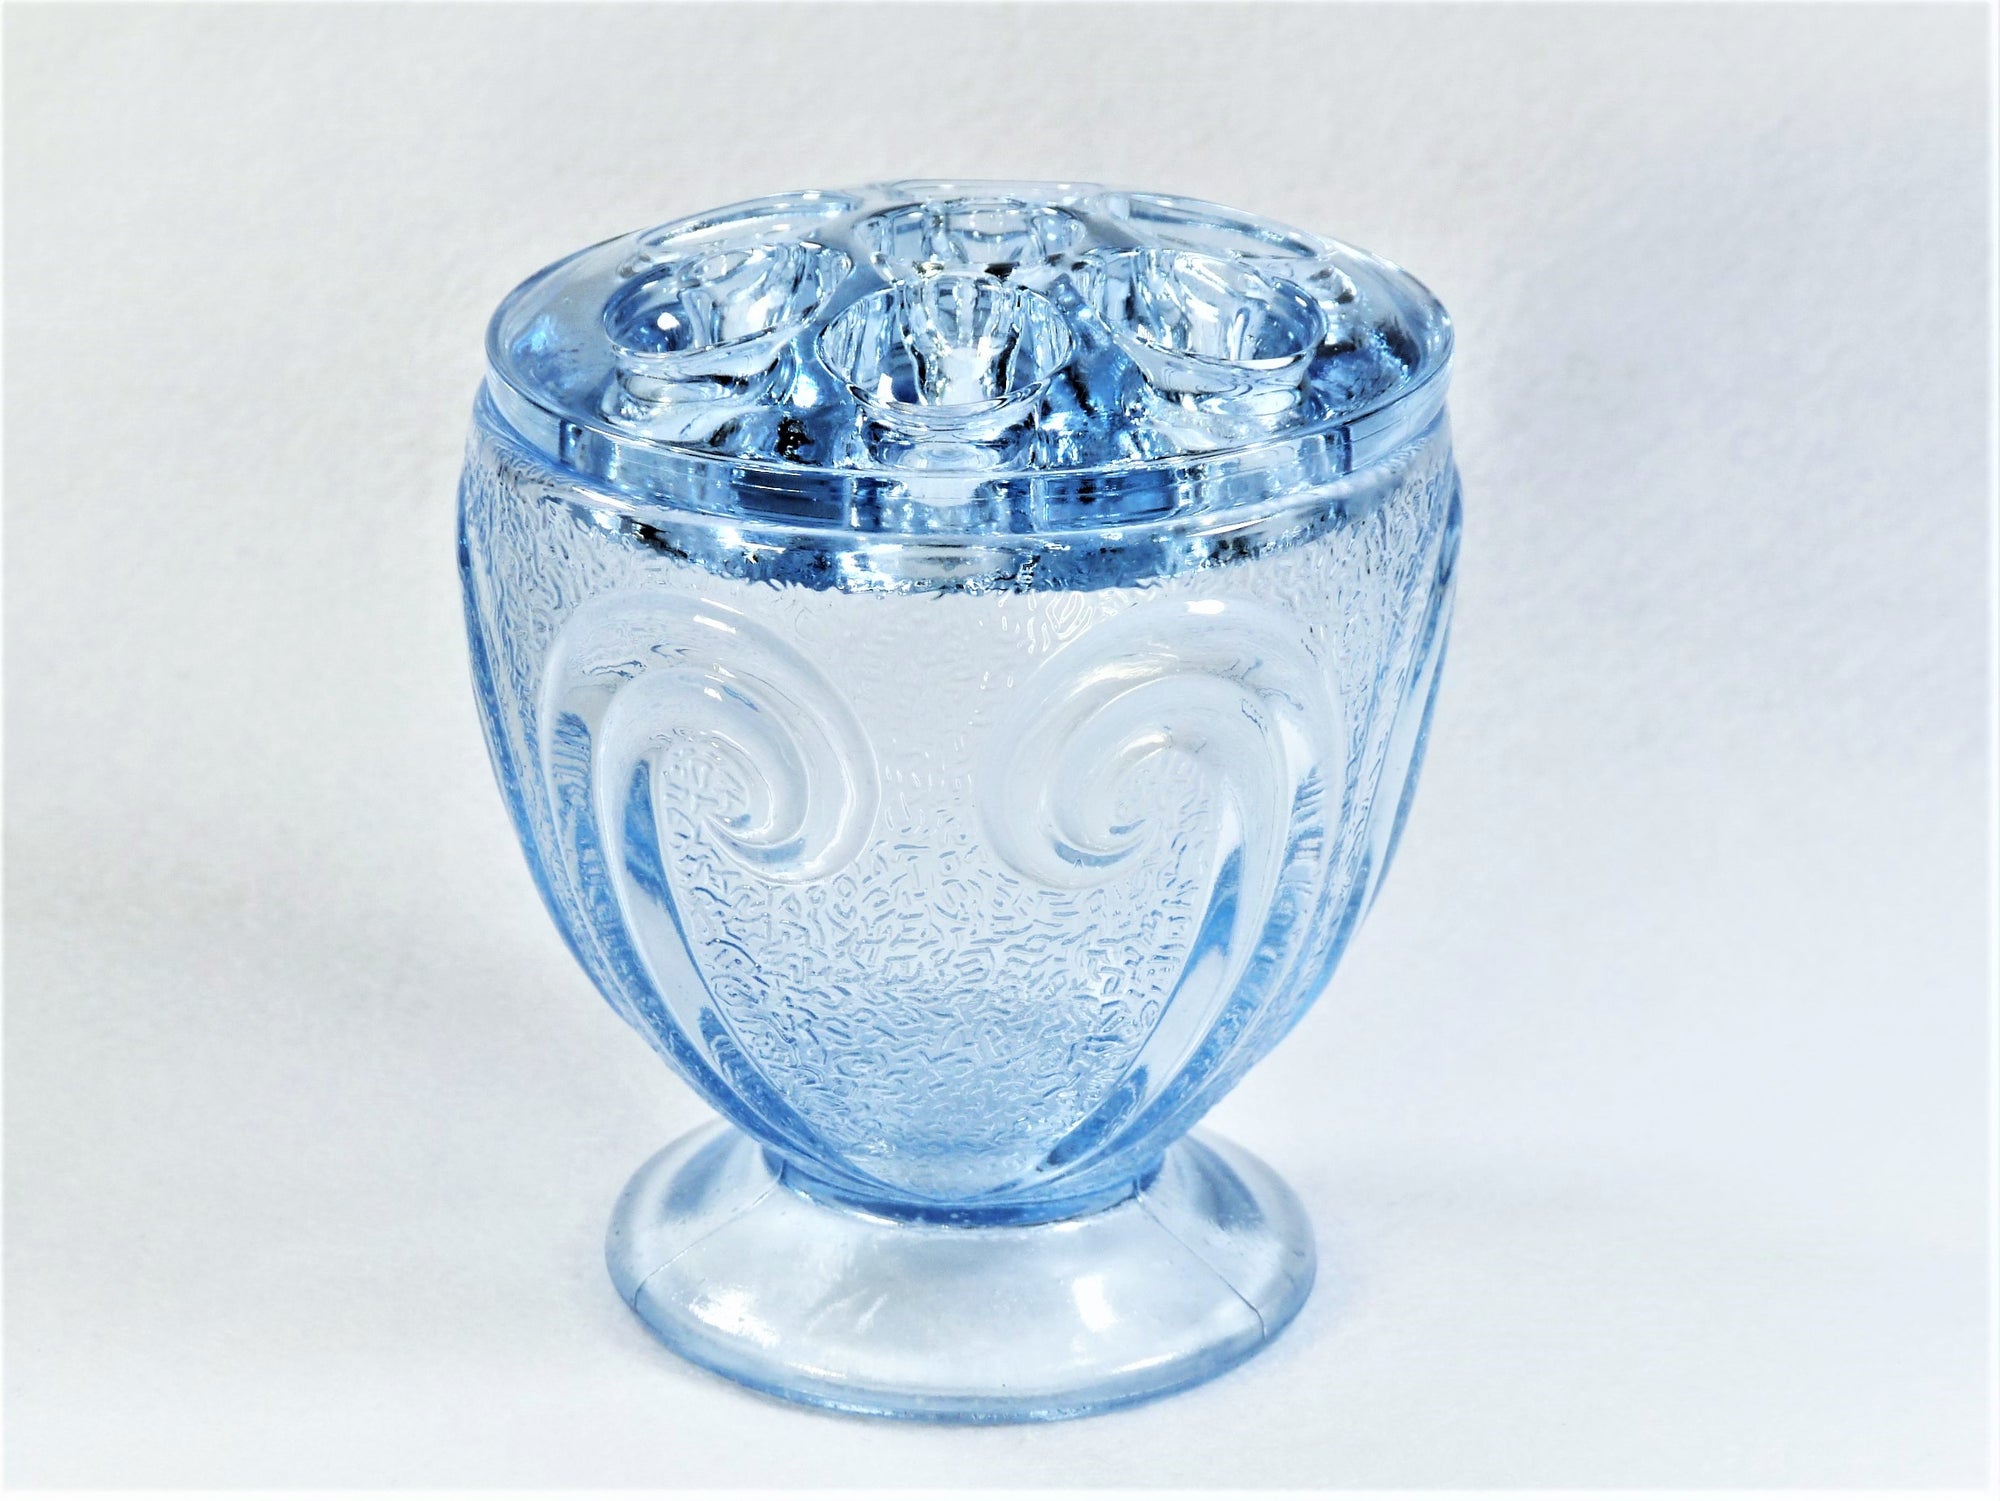 Blue Glass Vase, Posy Vase, Pressed Glass, Pretty Small Vase